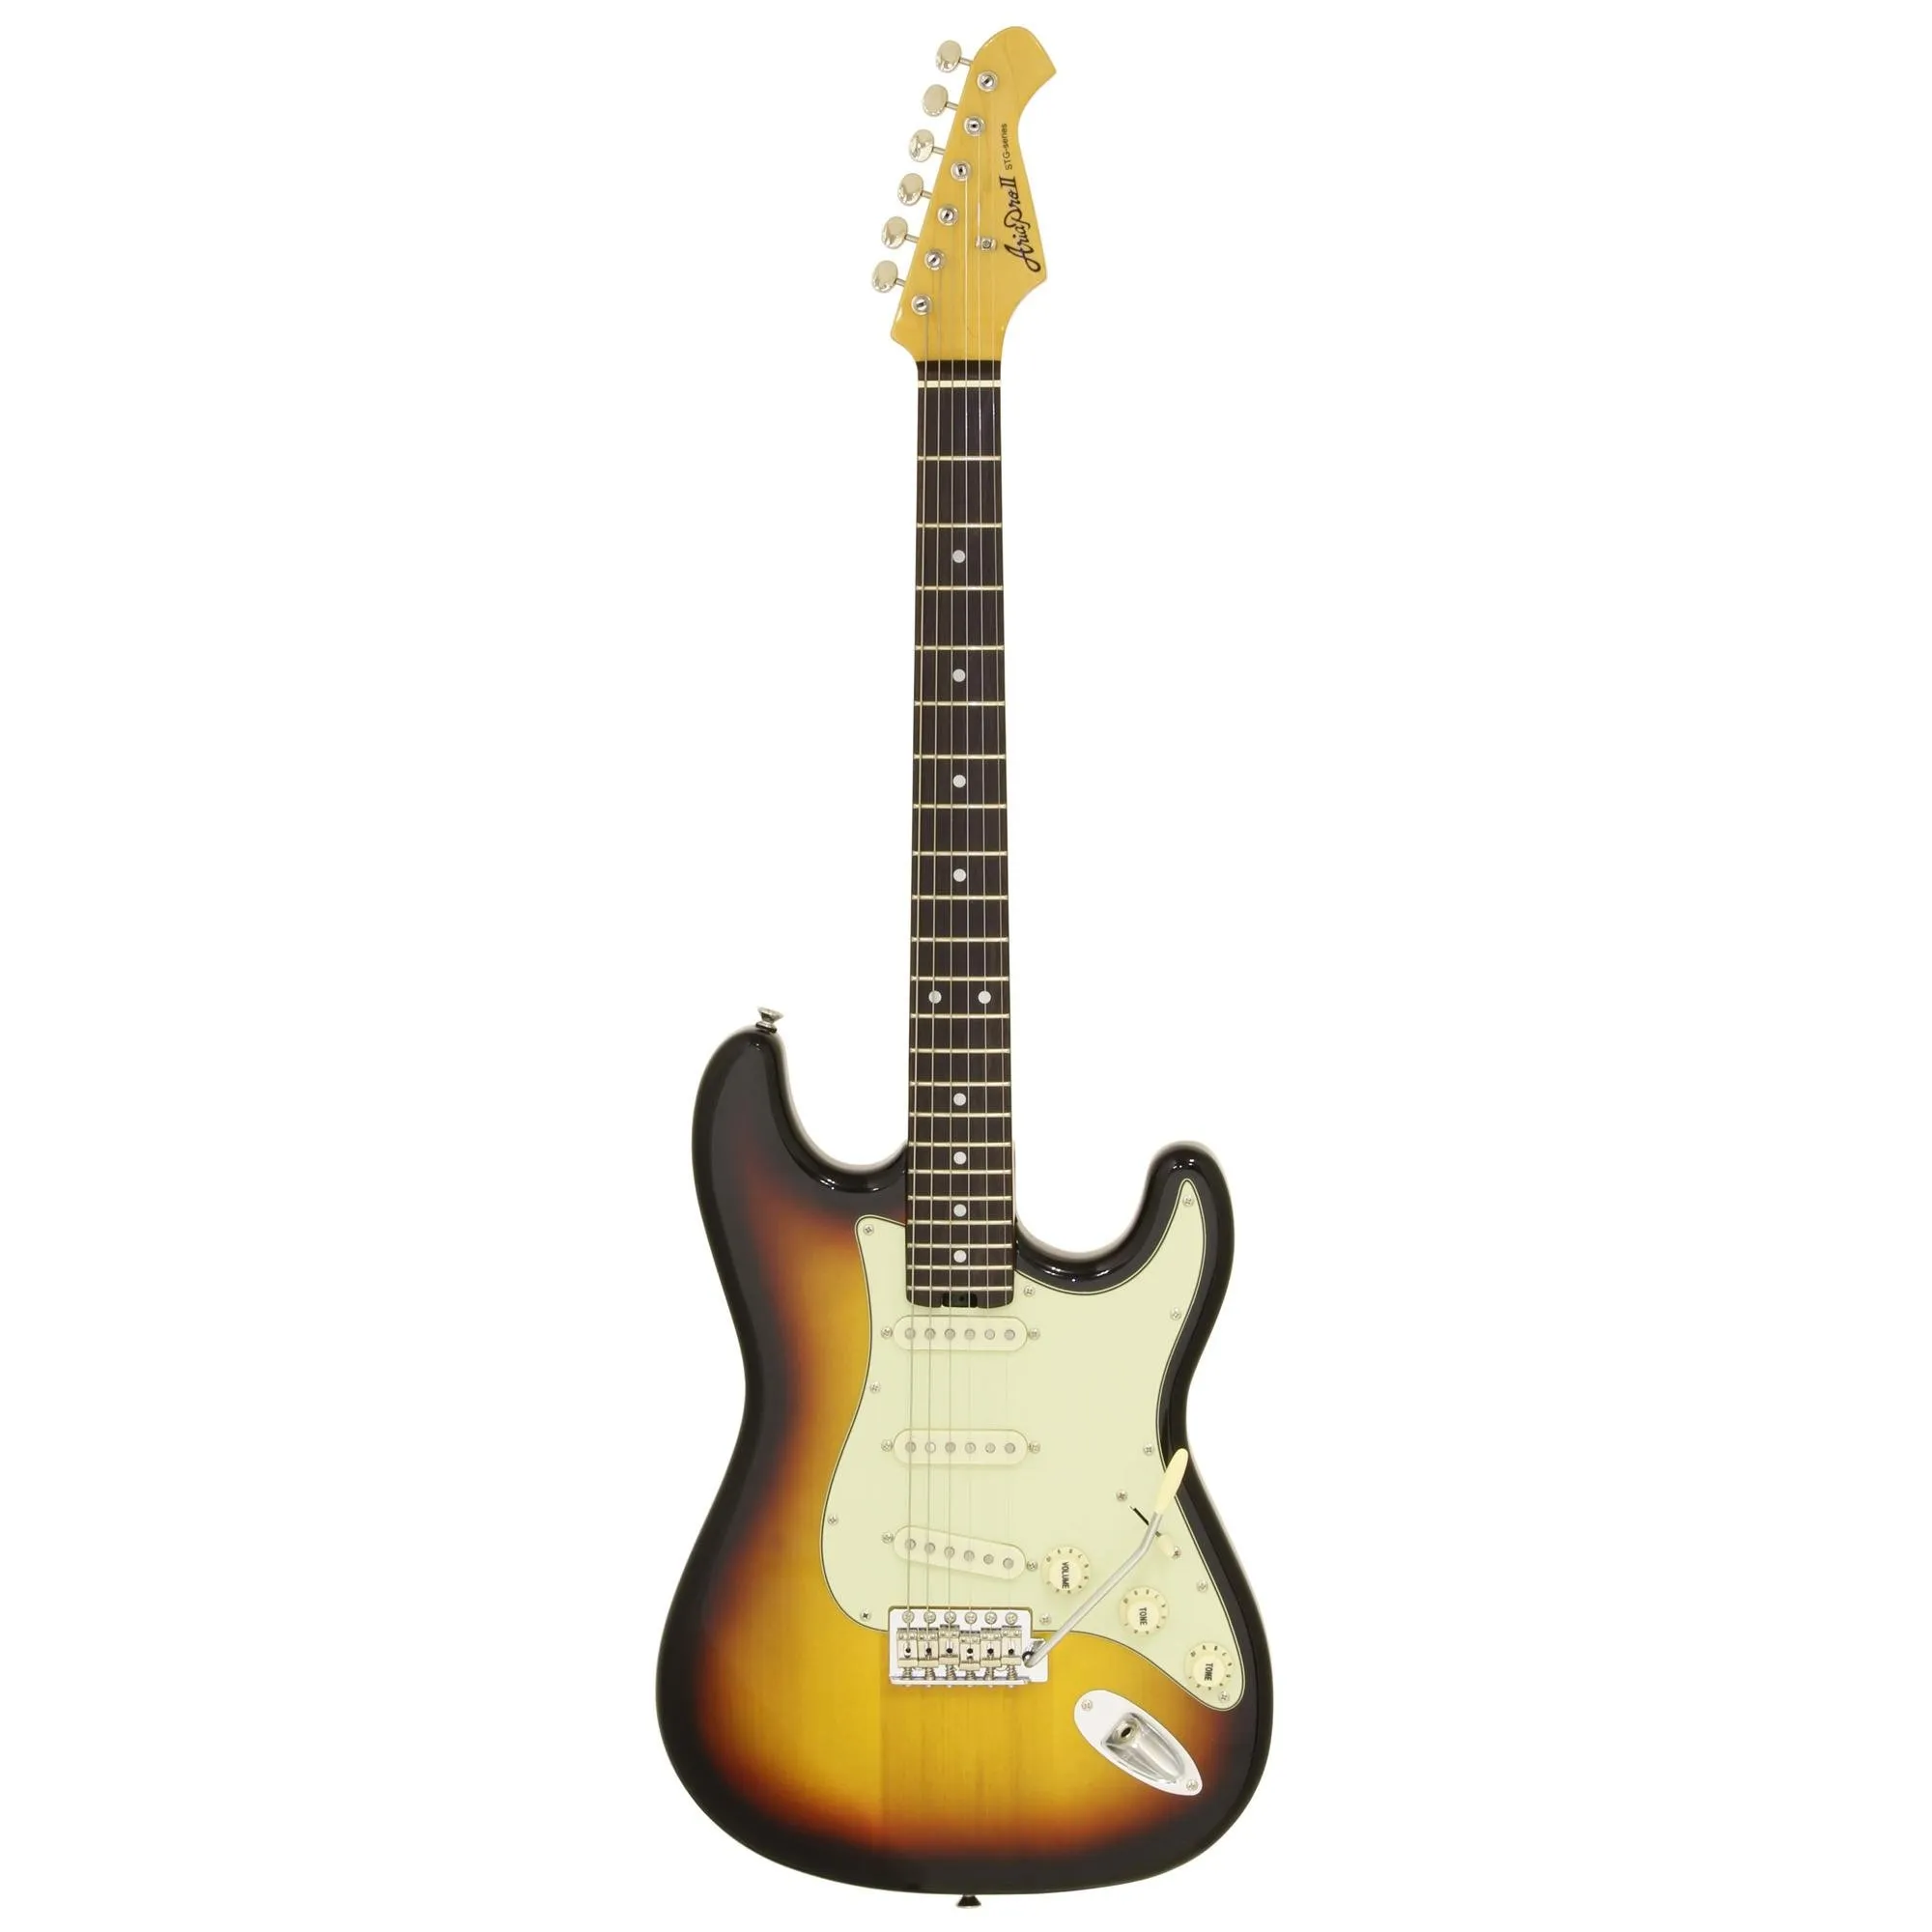 Guitarra Aria STG-62 3 Tone Sunburst por 2.689,00 à vista no boleto/pix ou parcele em até 12x sem juros. Compre na loja Mundomax!